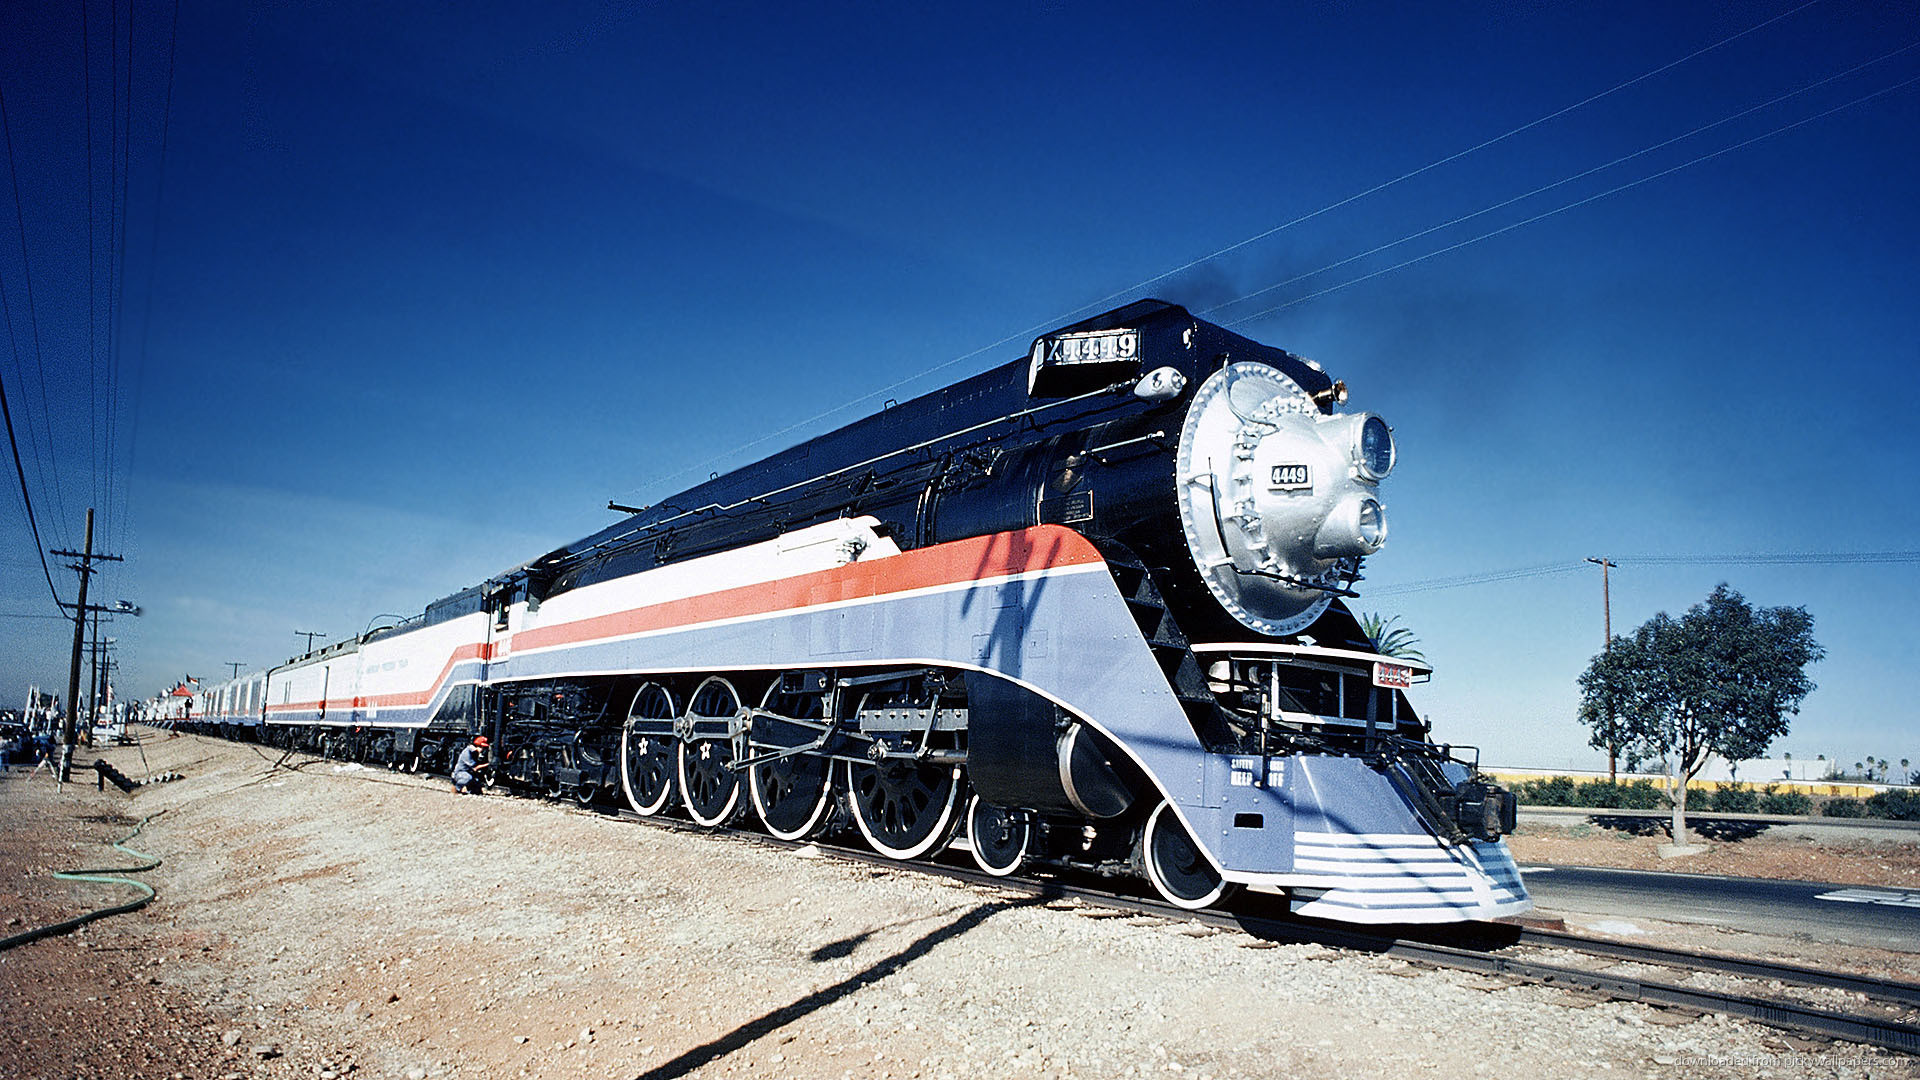 1920x1080 American train picture